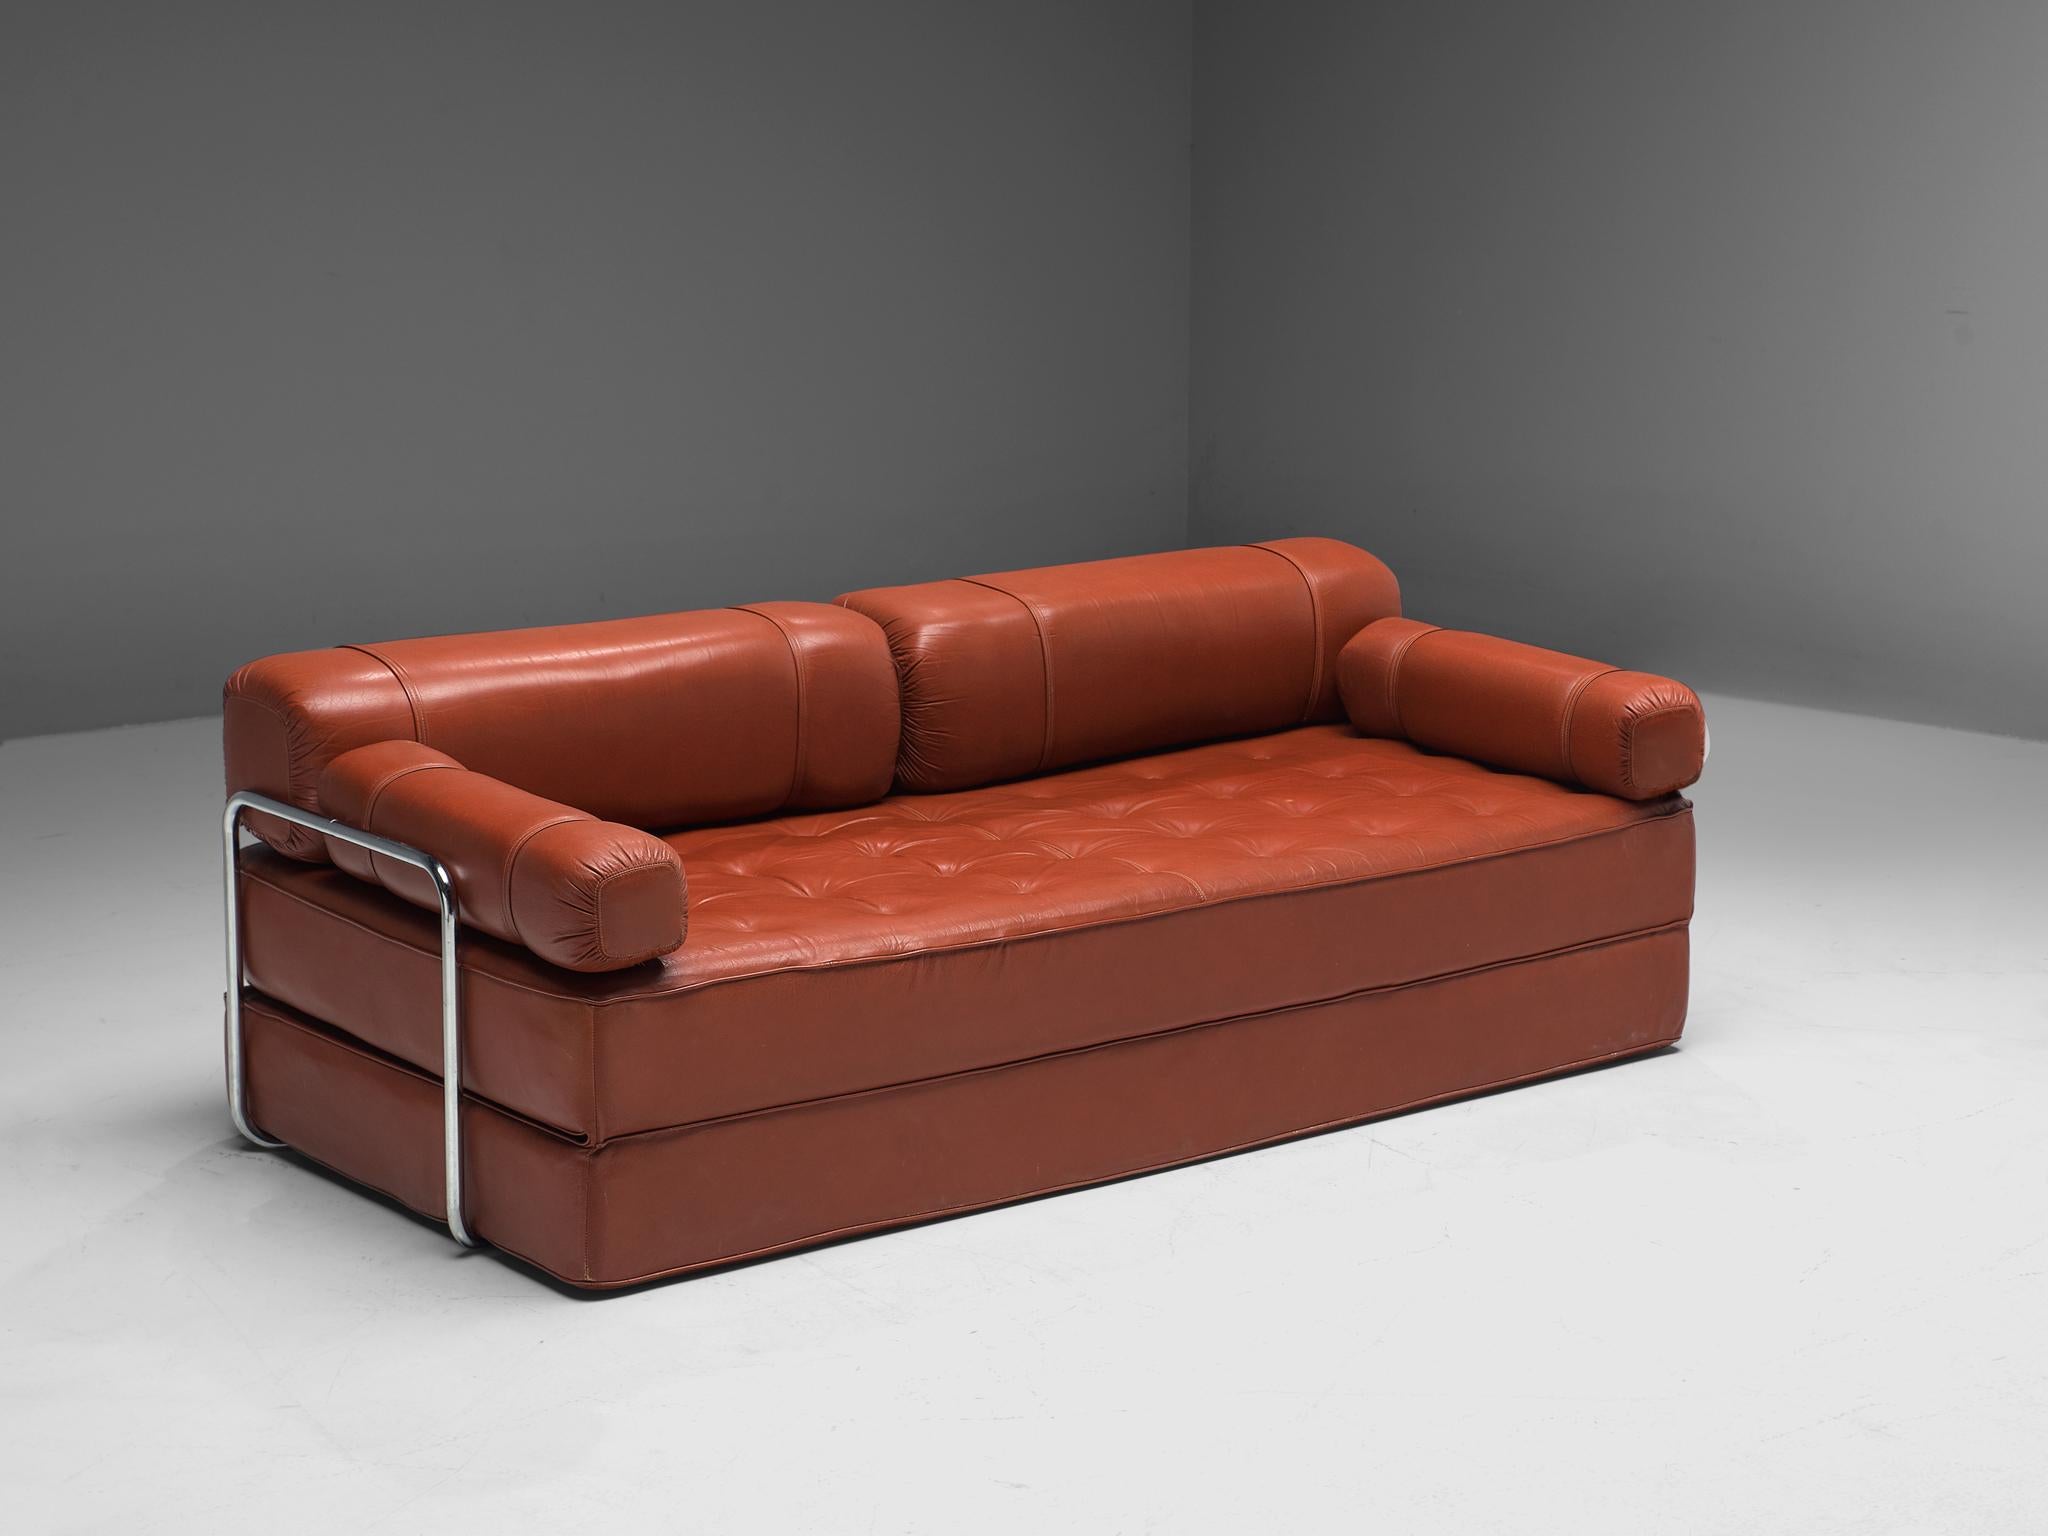 Sofa oder ausklappbares Bett, Leder und verchromtes Metall, Europa, 1970er Jahre.

Schönes postmodernes Ledersofa, entworfen in Europa in den 1970er Jahren. Es ist ein vielseitiges Möbelstück, da es sich auch leicht zu einem Doppelbett ausklappen